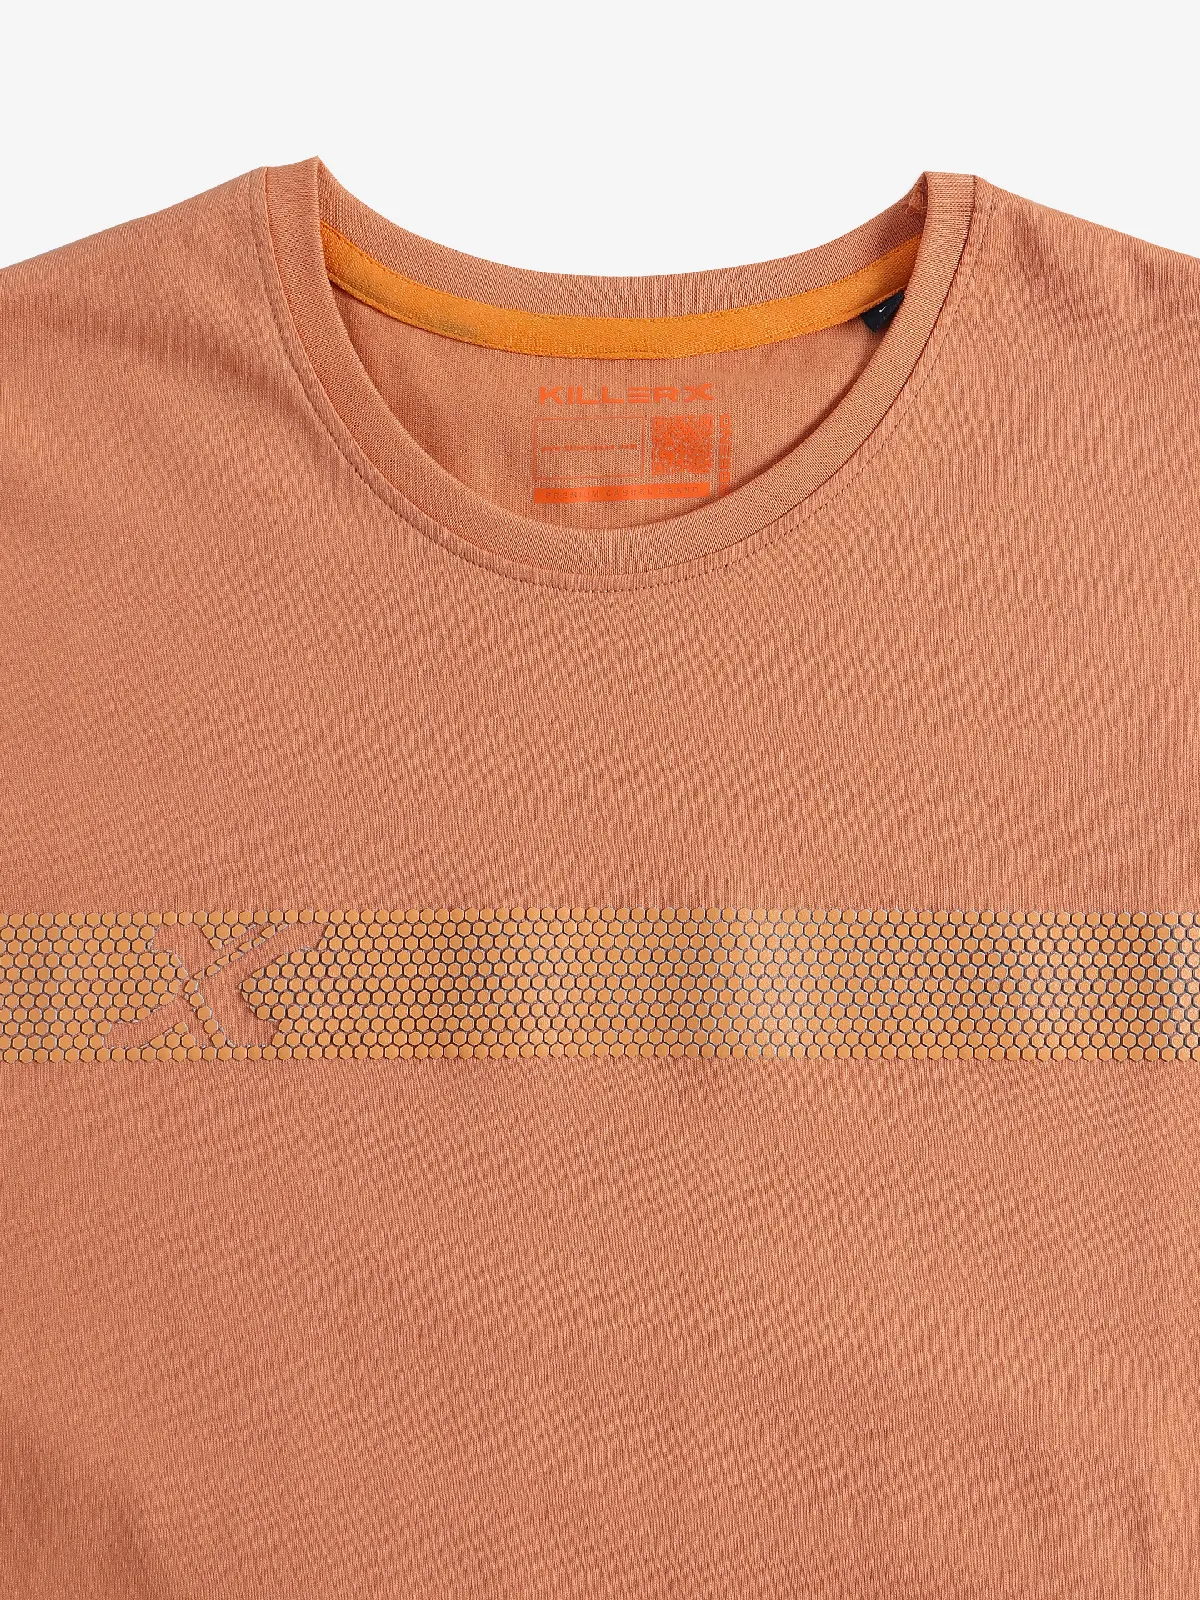 Killer cotton peach half sleeves t-shirt